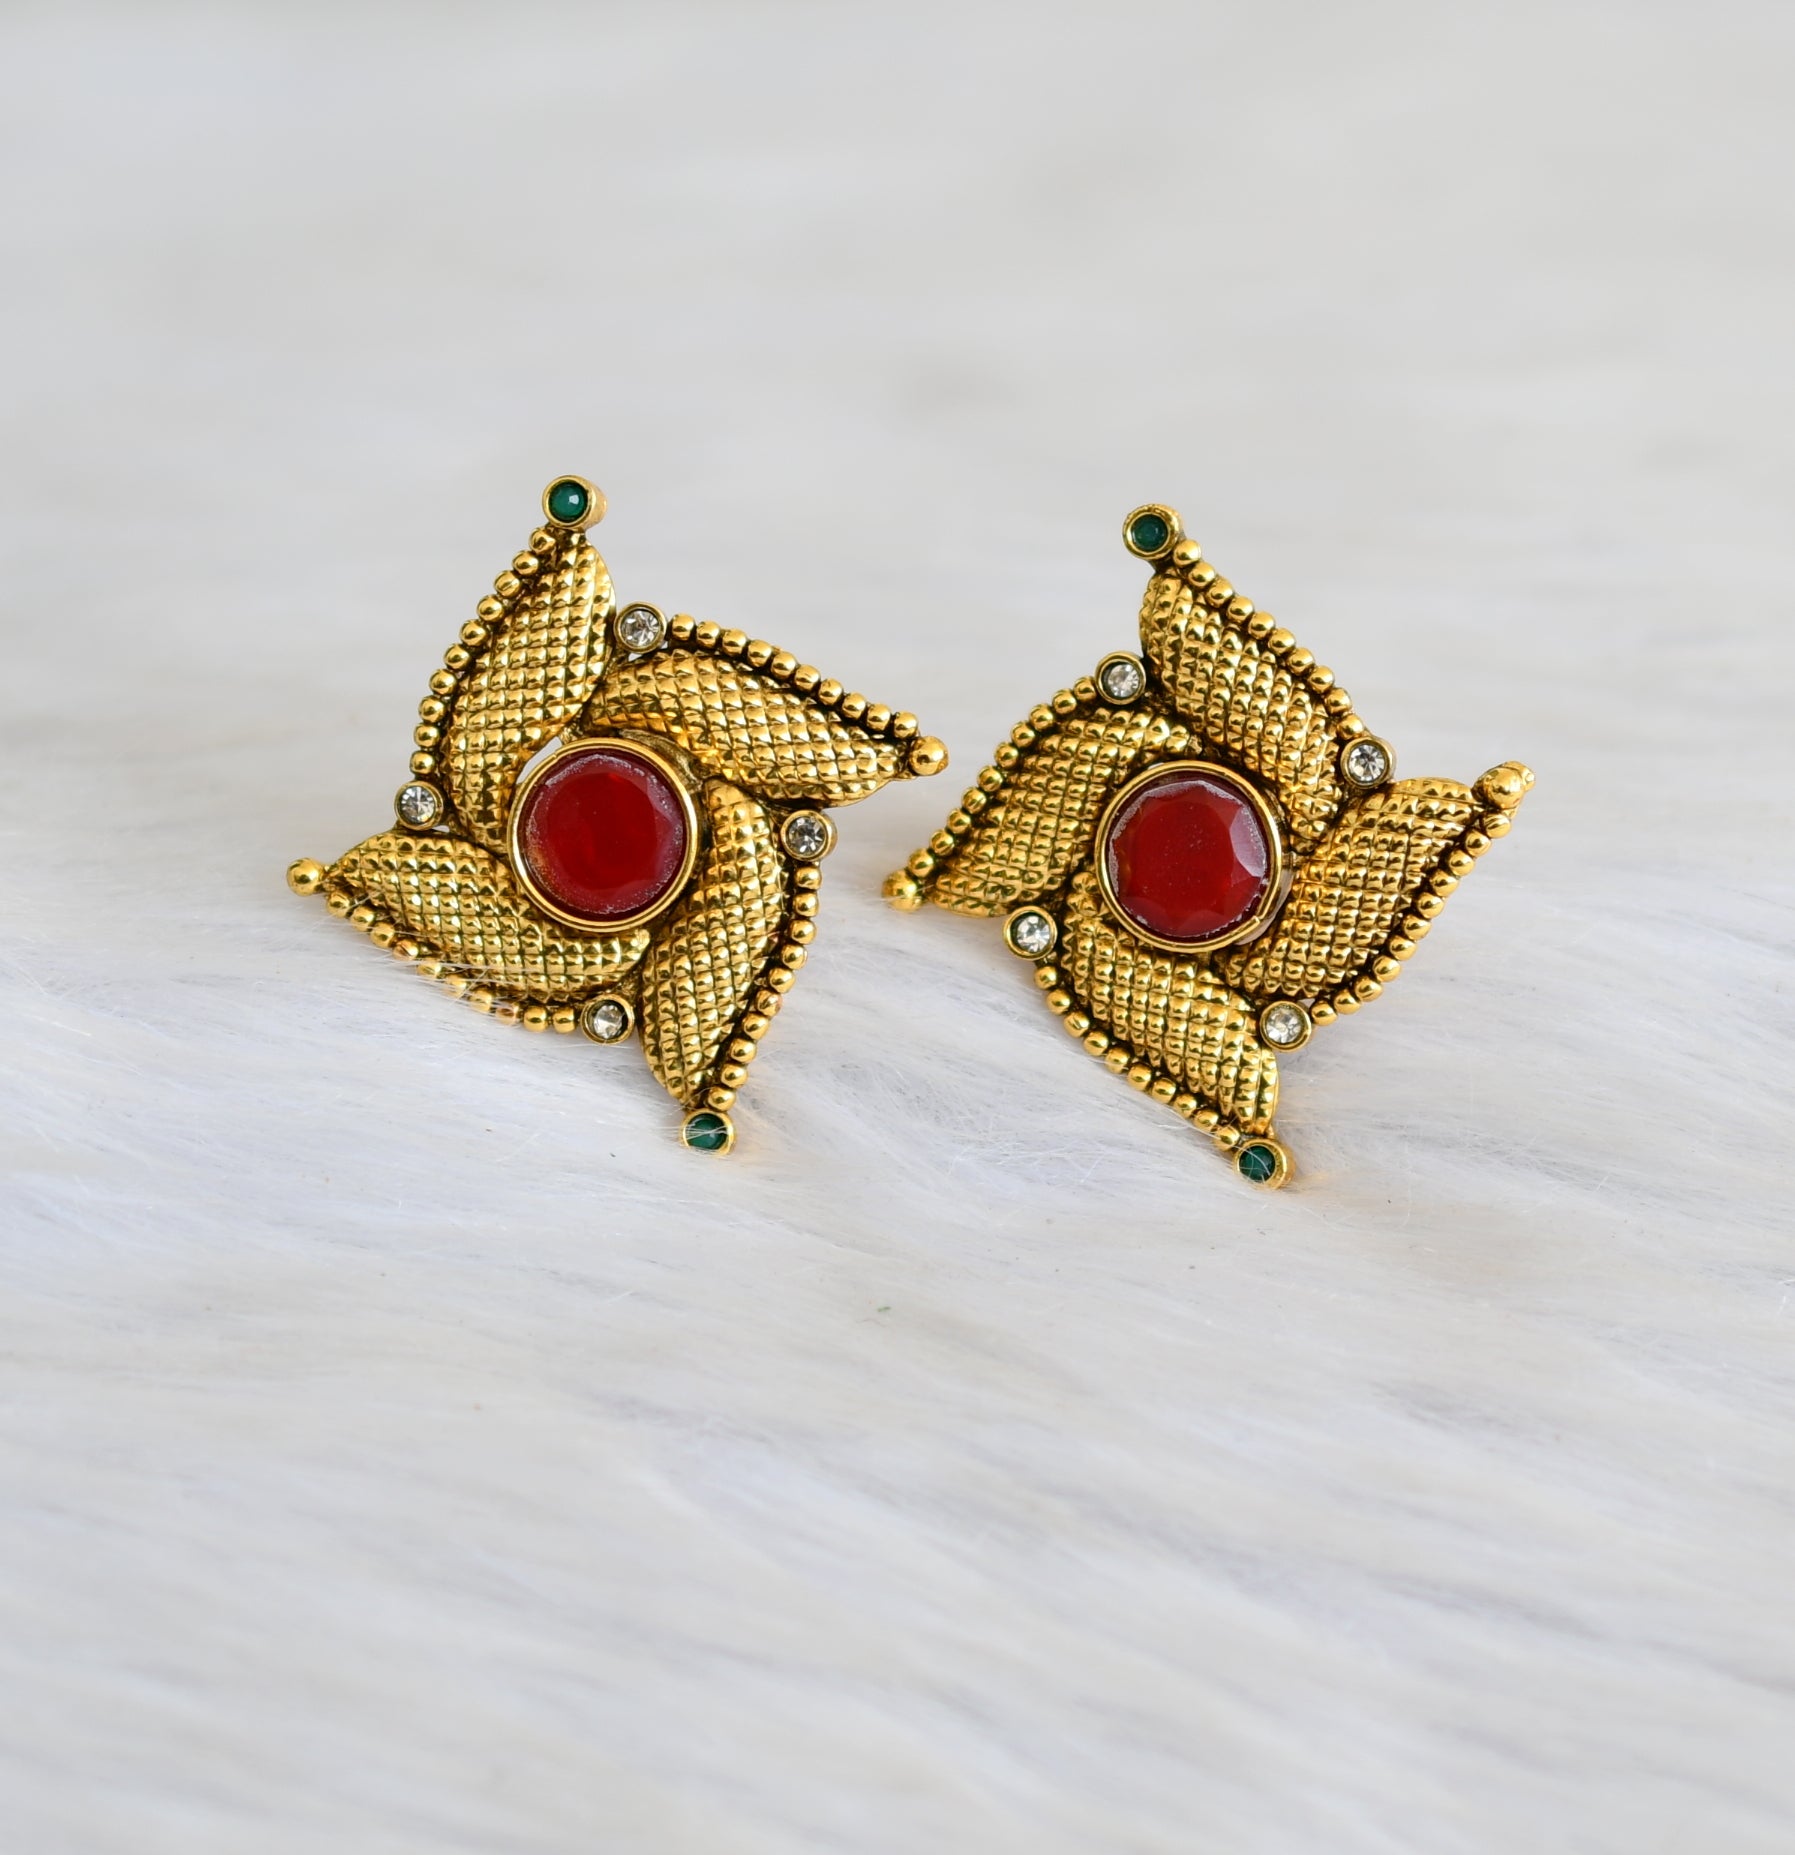 Buy Gold Tibetan Earrings, Dangle Earrings, Bohemian Jewelry, Crystal  Earrings, Non Allergic Earrings, Ethnic Earrings Gift, Teardrop Earrings  Online in India - Etsy